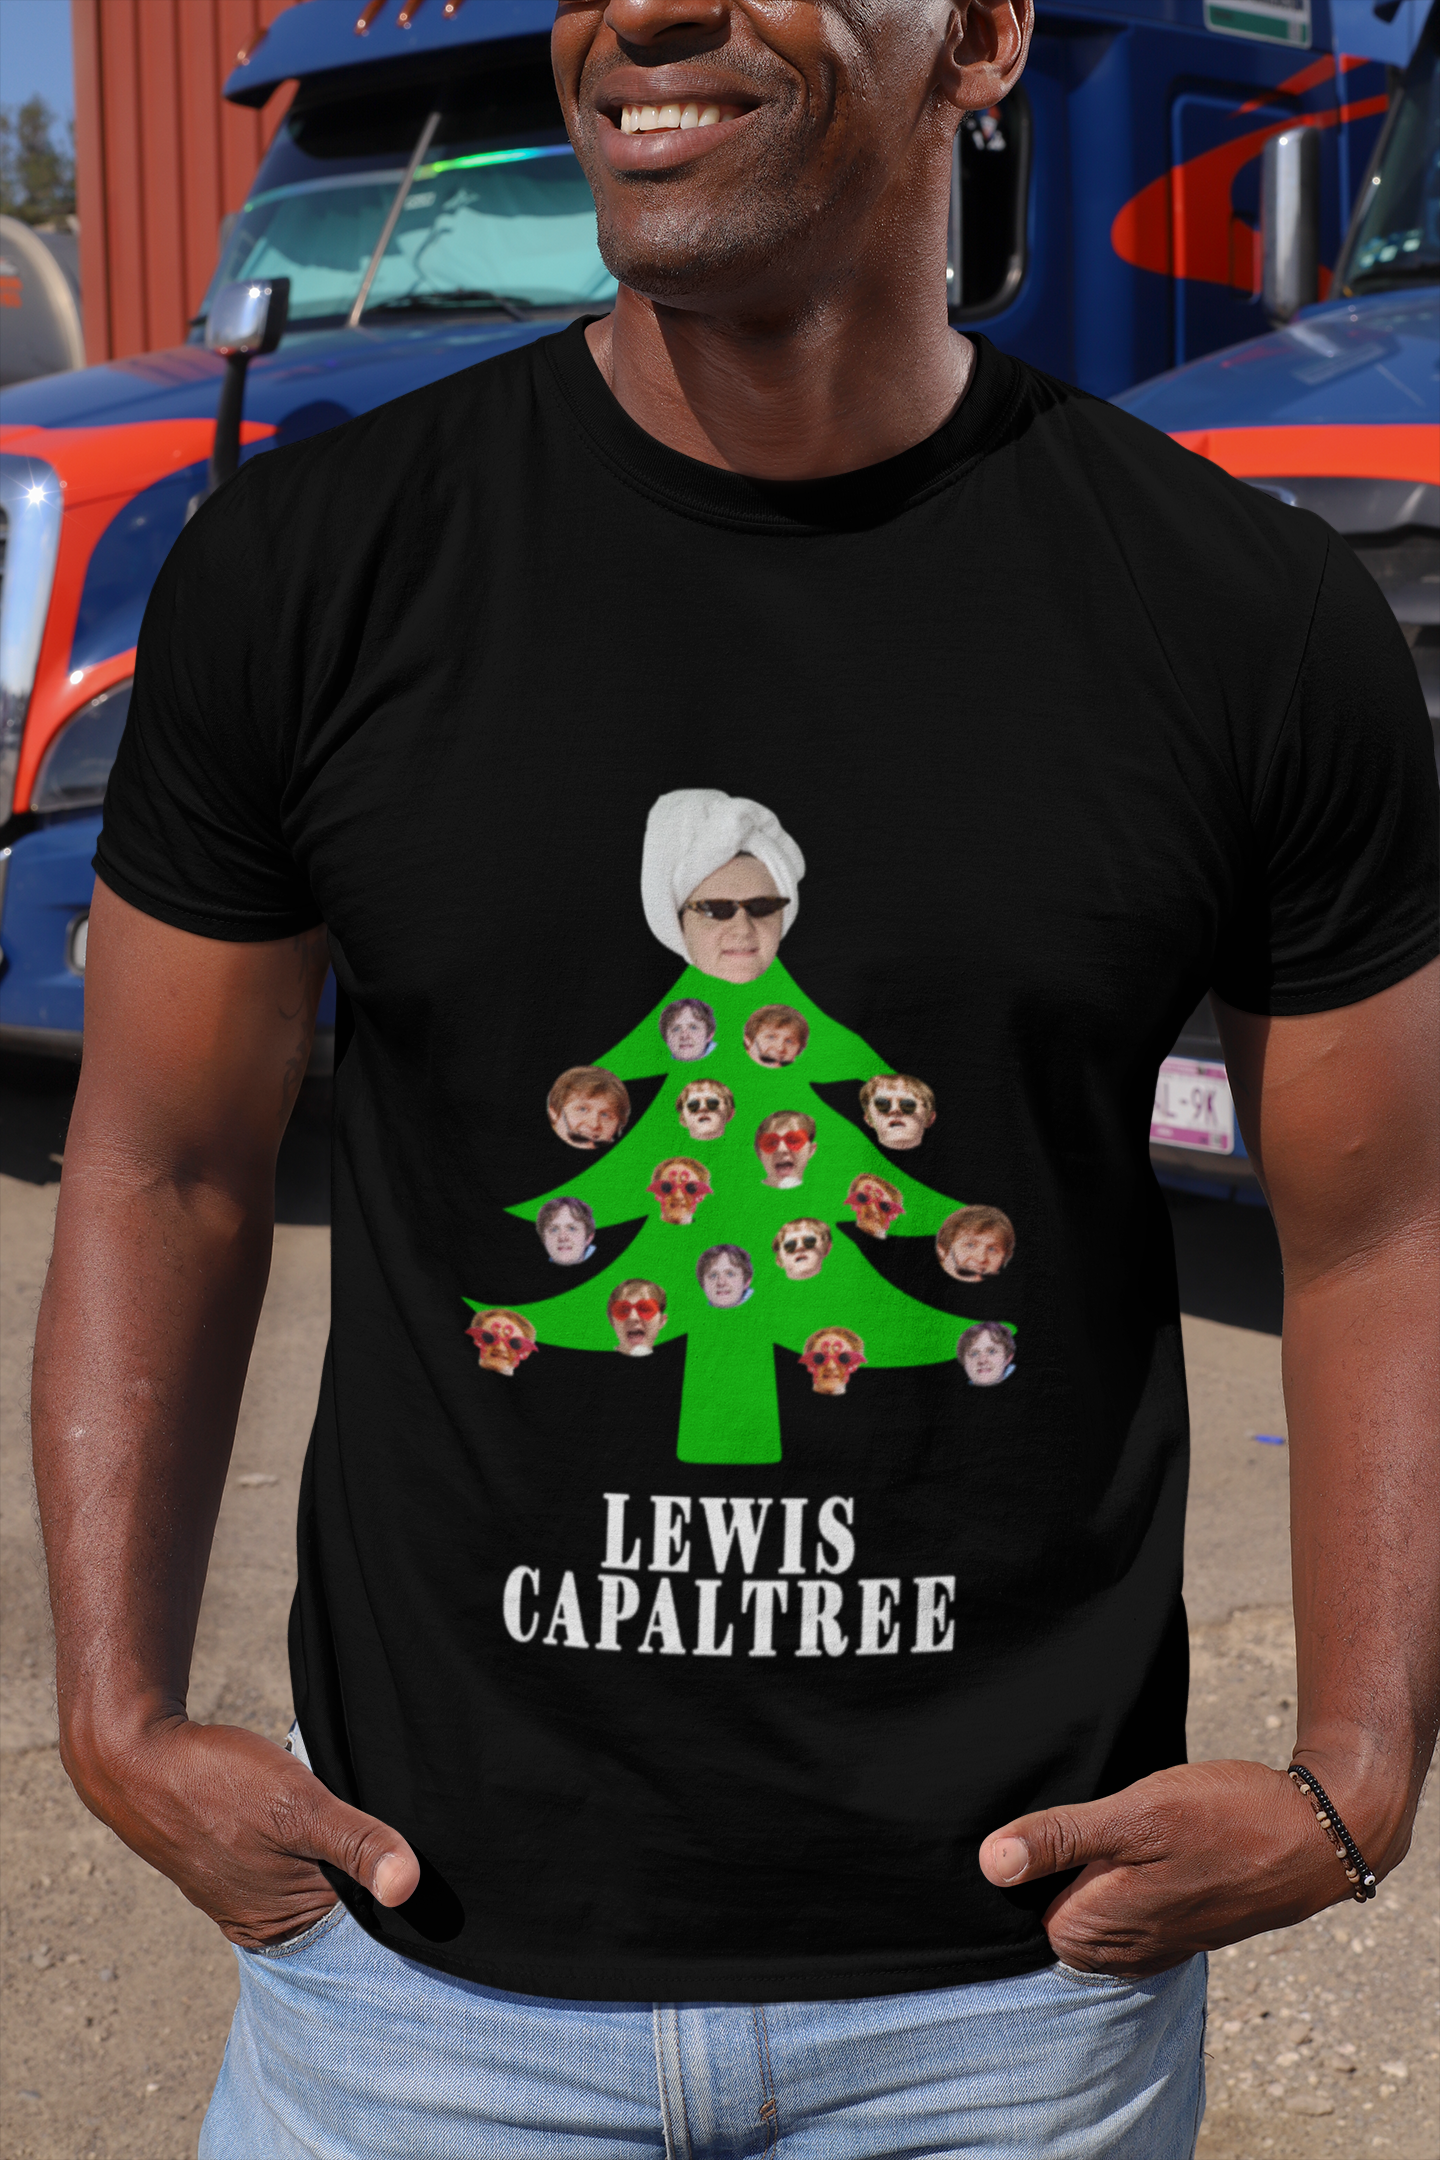 Lewis capaltree christmas tree shirt, hoodie, tank top – pdn